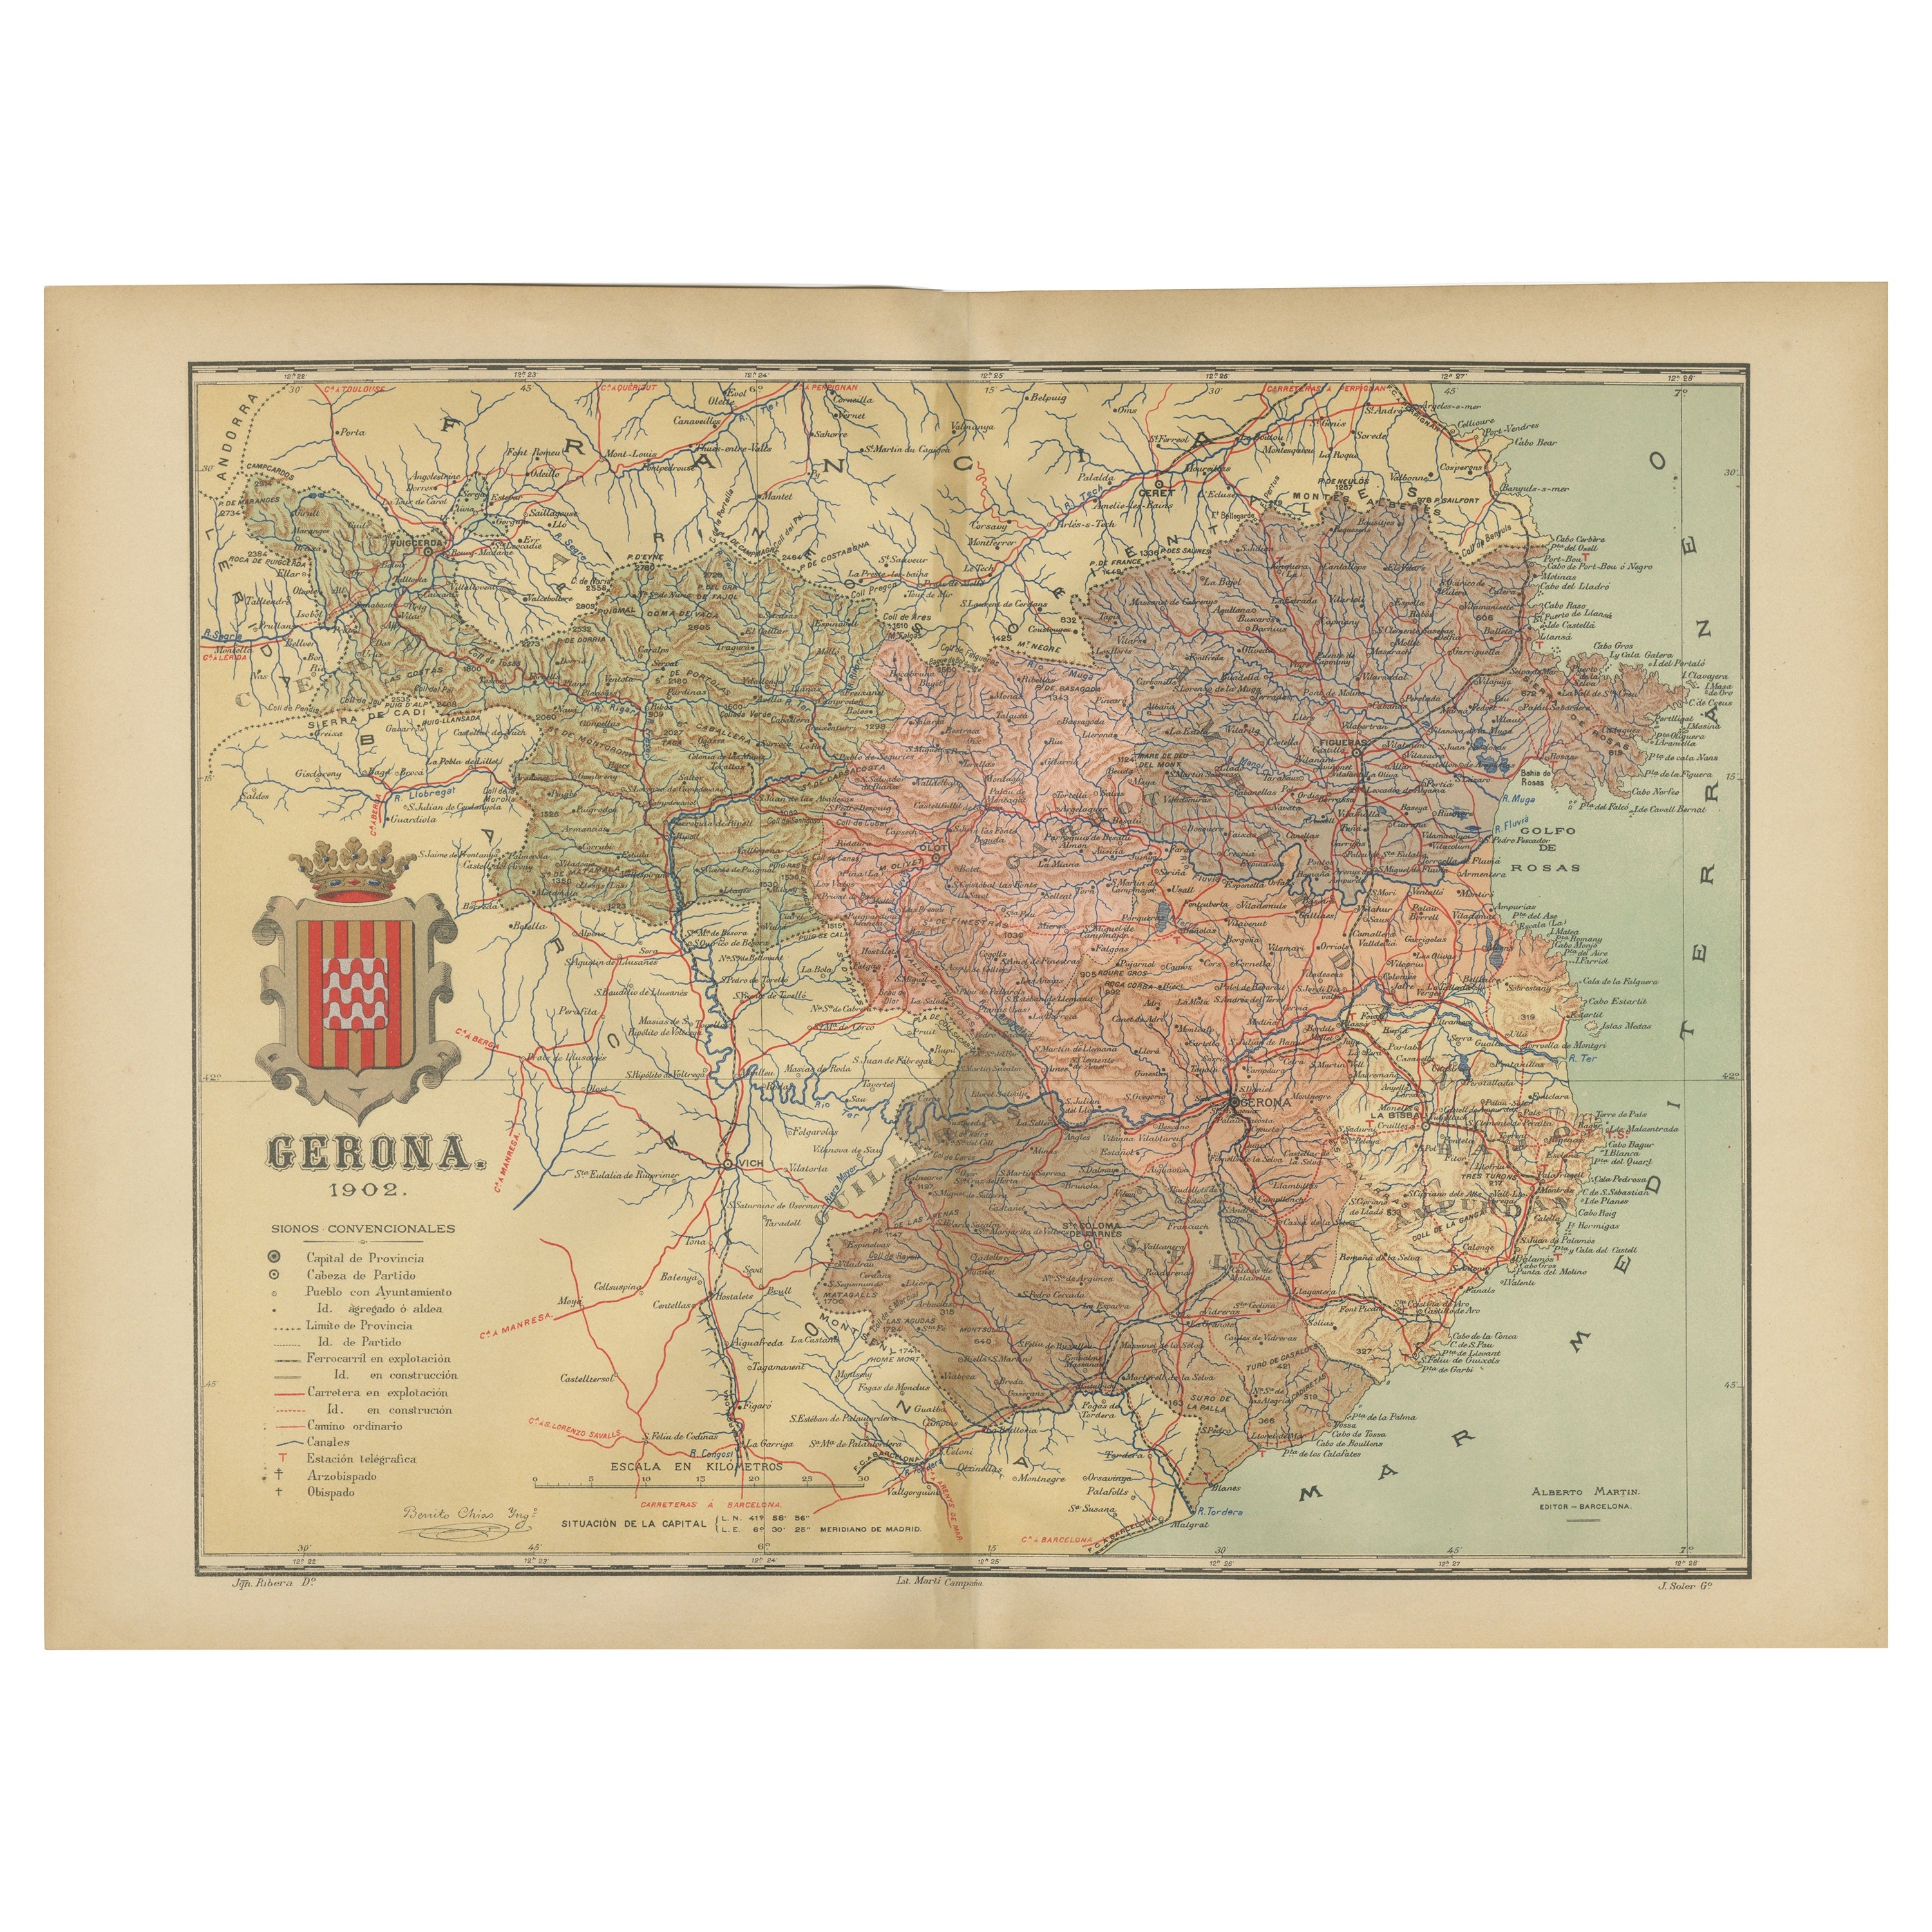 Girona 1902: Geografische und infrastrukturelle Karte der Nordprovinz Kataloniens